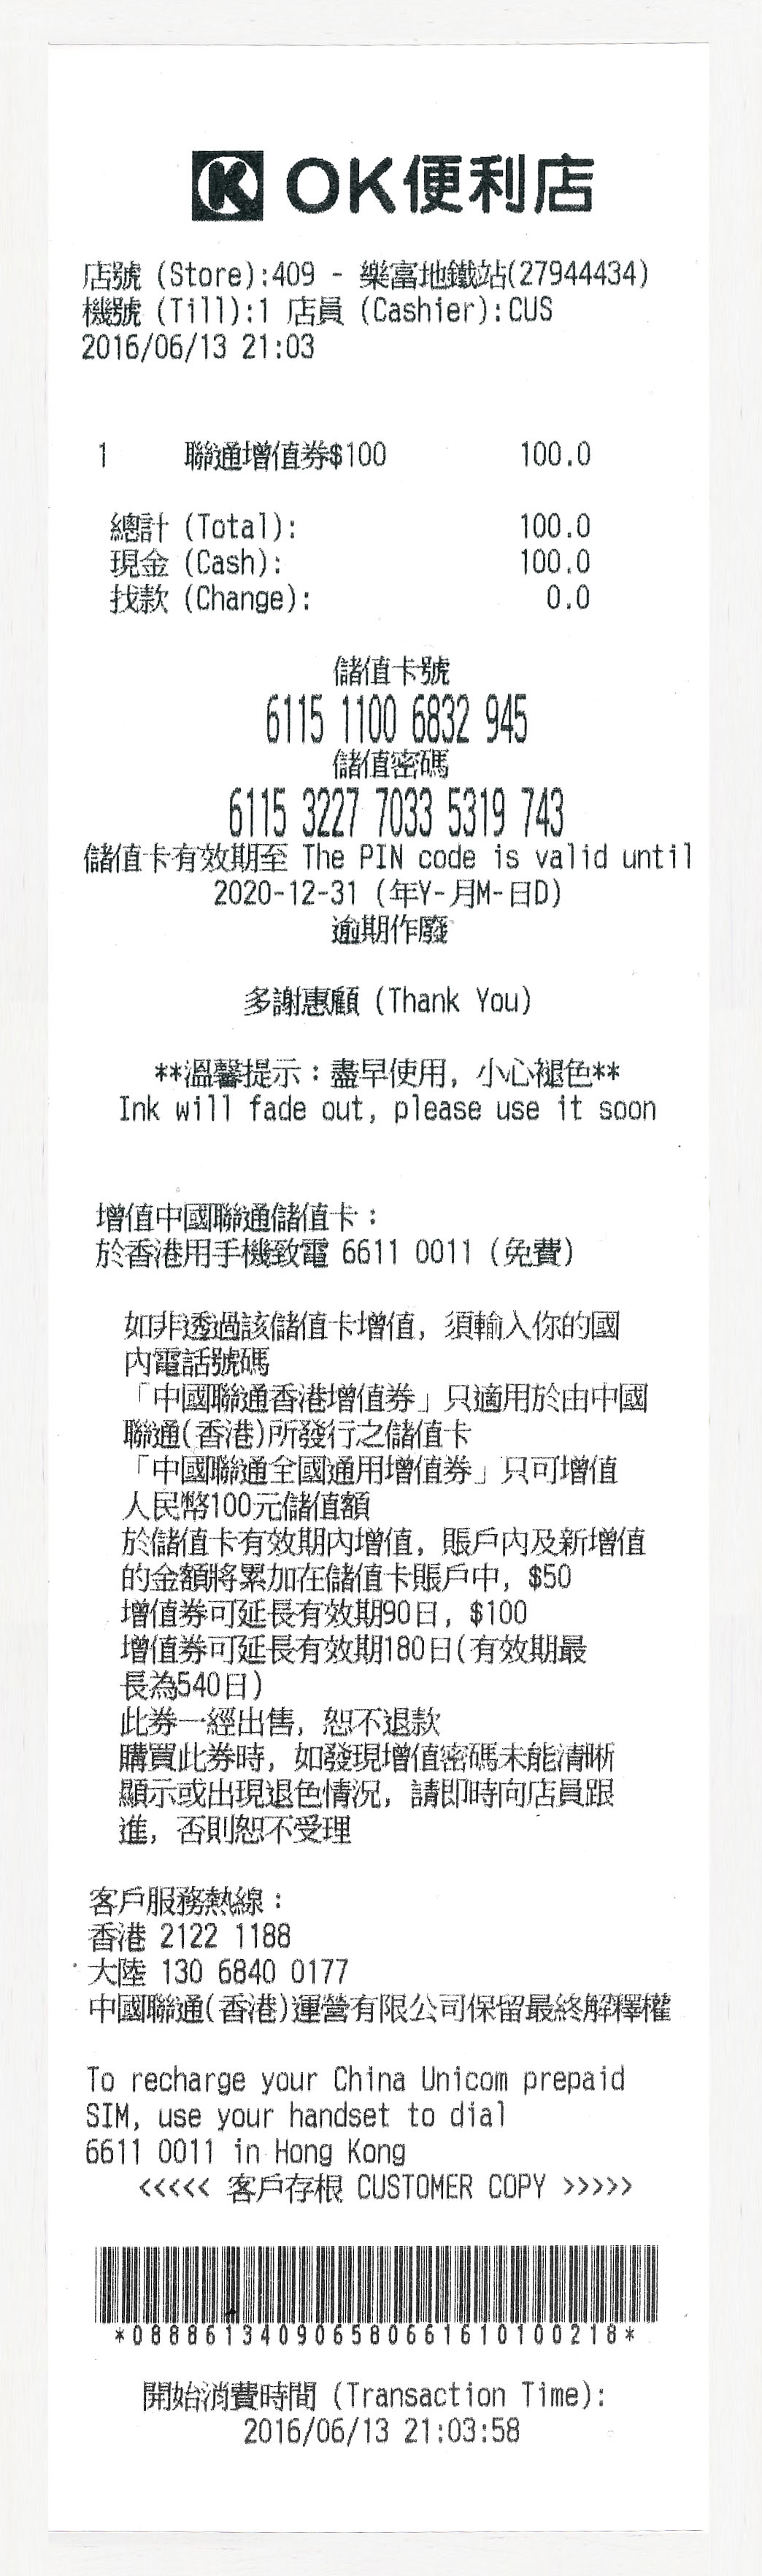 中國聯通香港跨境王3G加強版儲值卡ok便利店 7仔 7-11 充值3G增值1GB 30天plan方法問題 cross border kong sim card